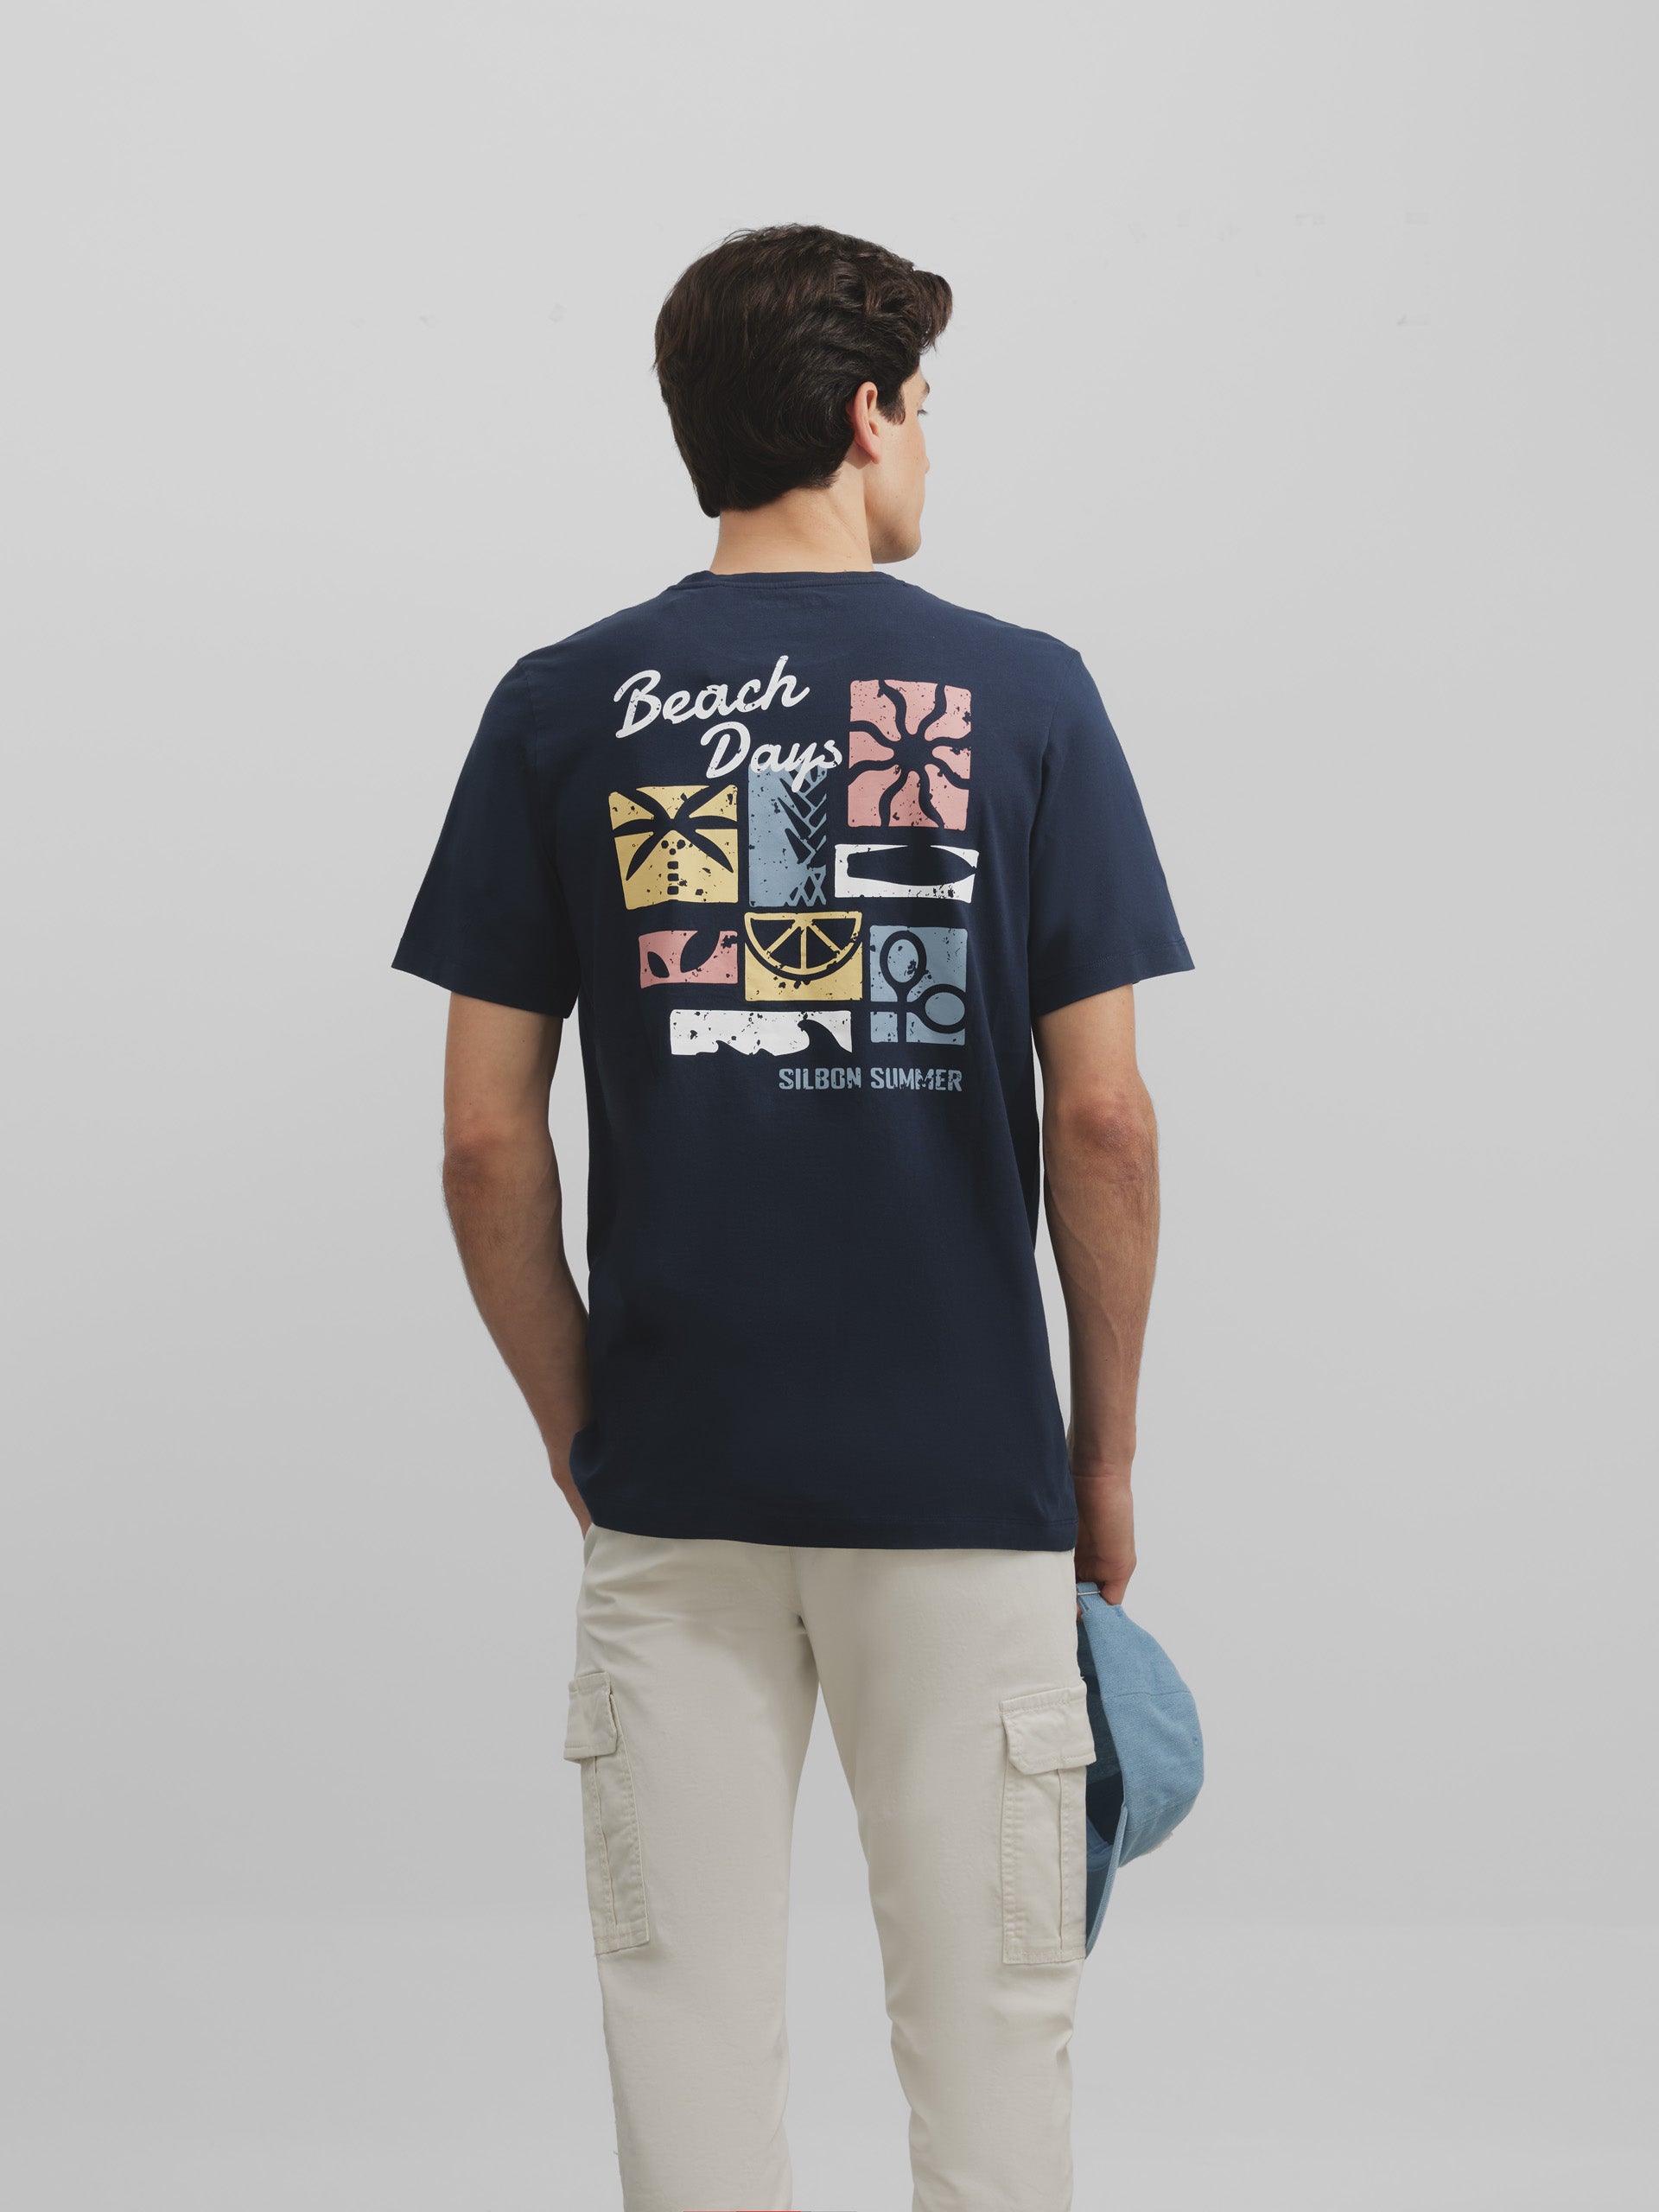 Navy blue beach days t-shirt